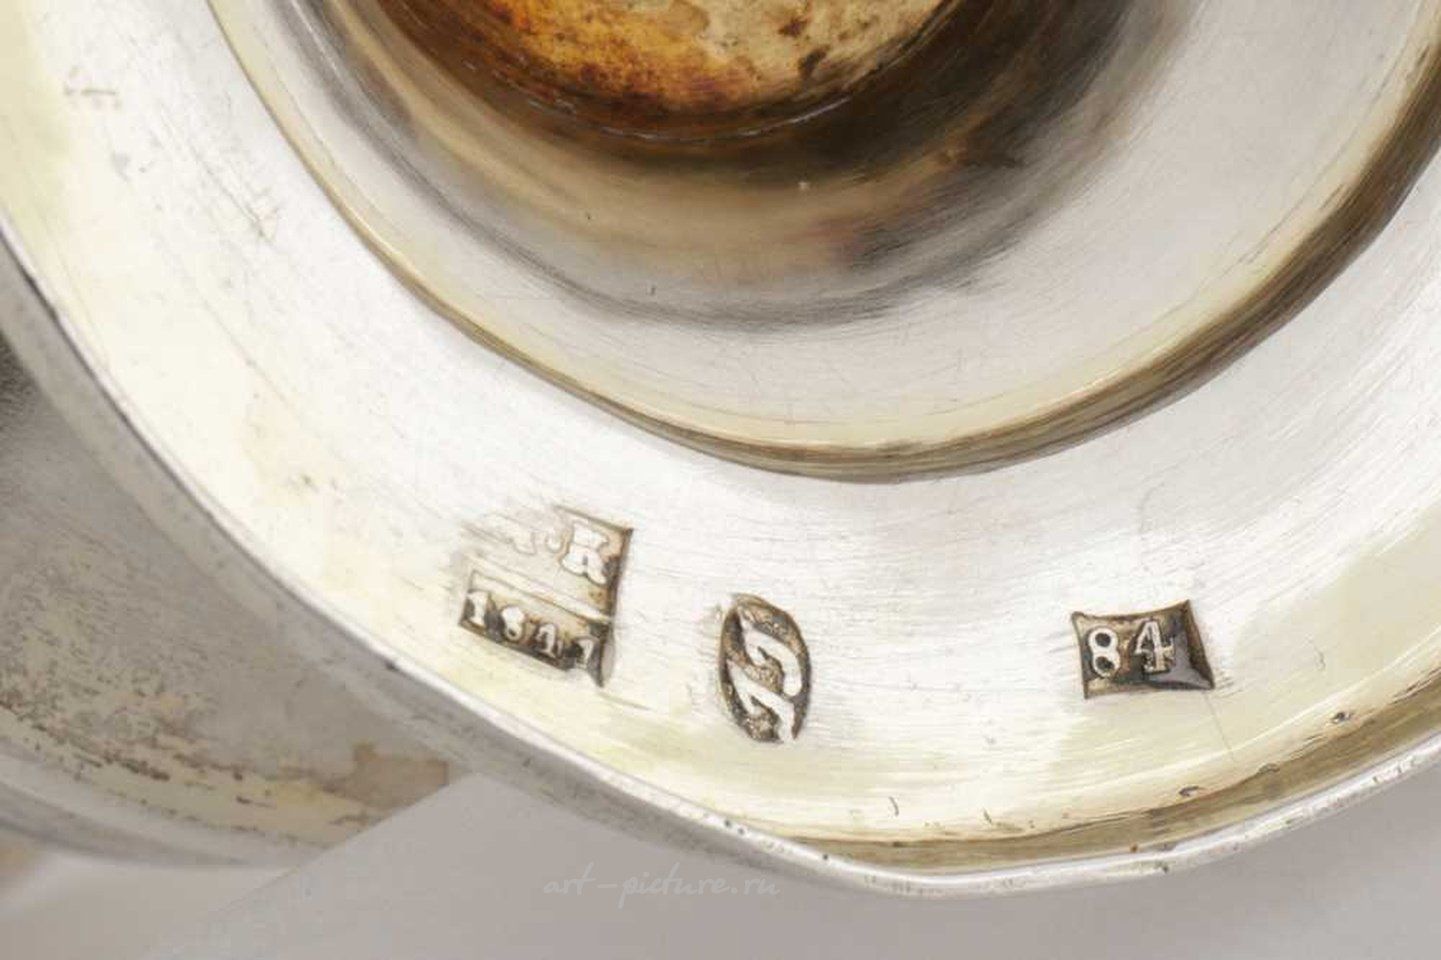 Русское серебро , Серебряная  чаша русского серебра 84 пробы времен Николая I в середине XIX века